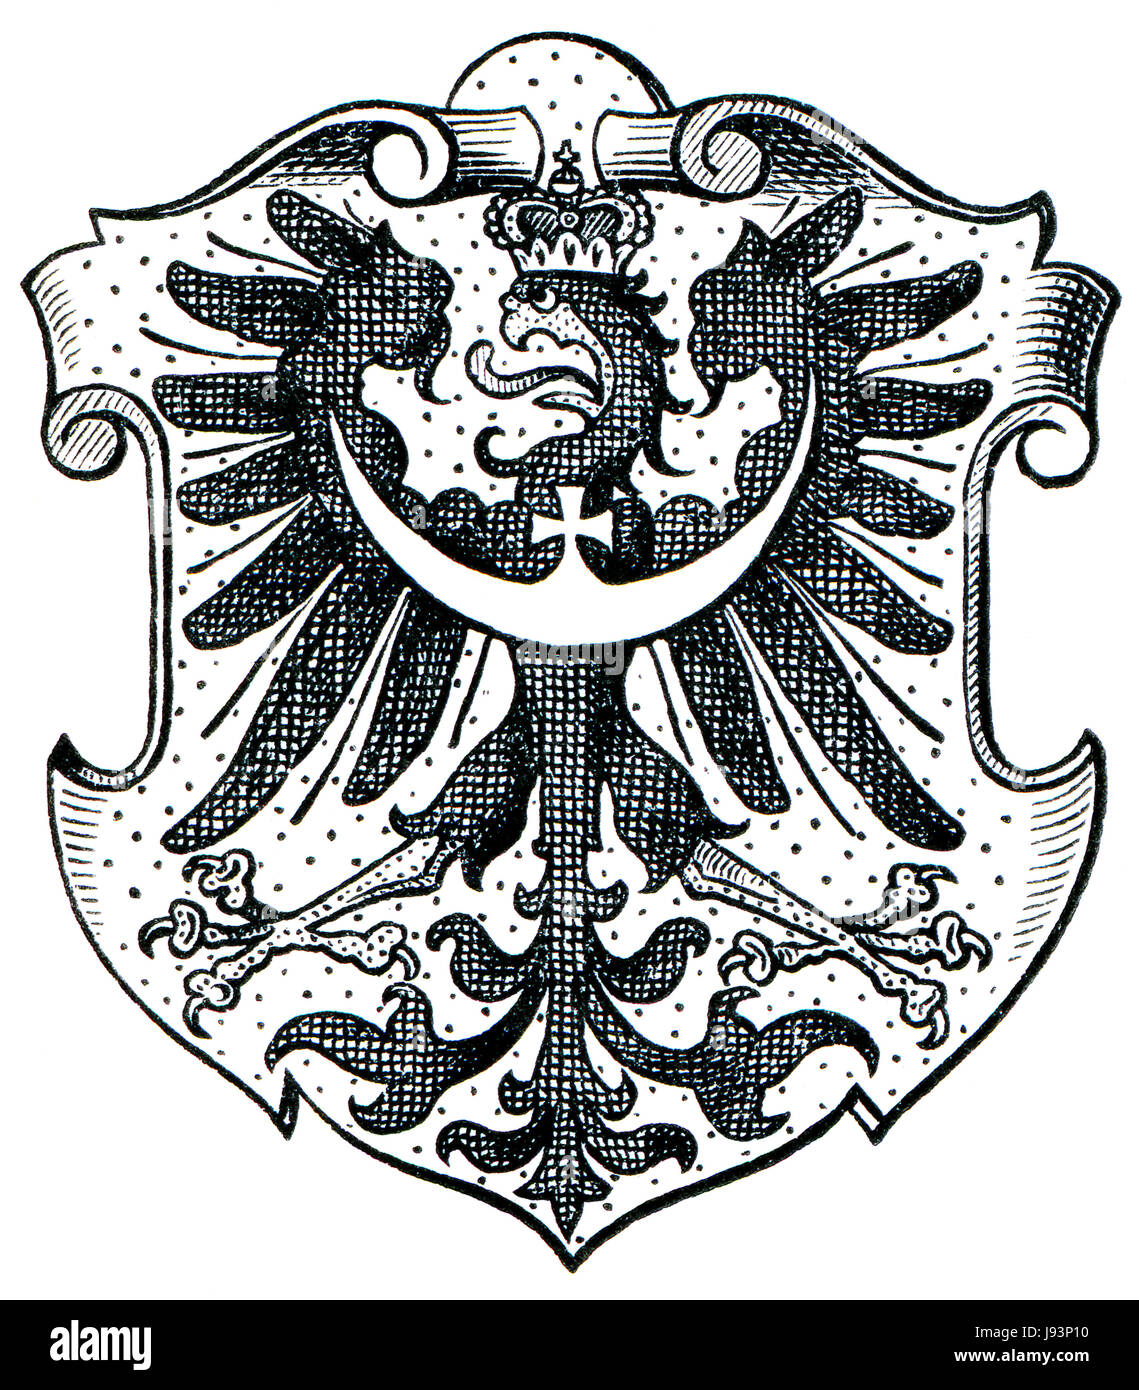 La Prussia, provincia, unito, Slesia, incisione, storici antichi, nero, Foto Stock